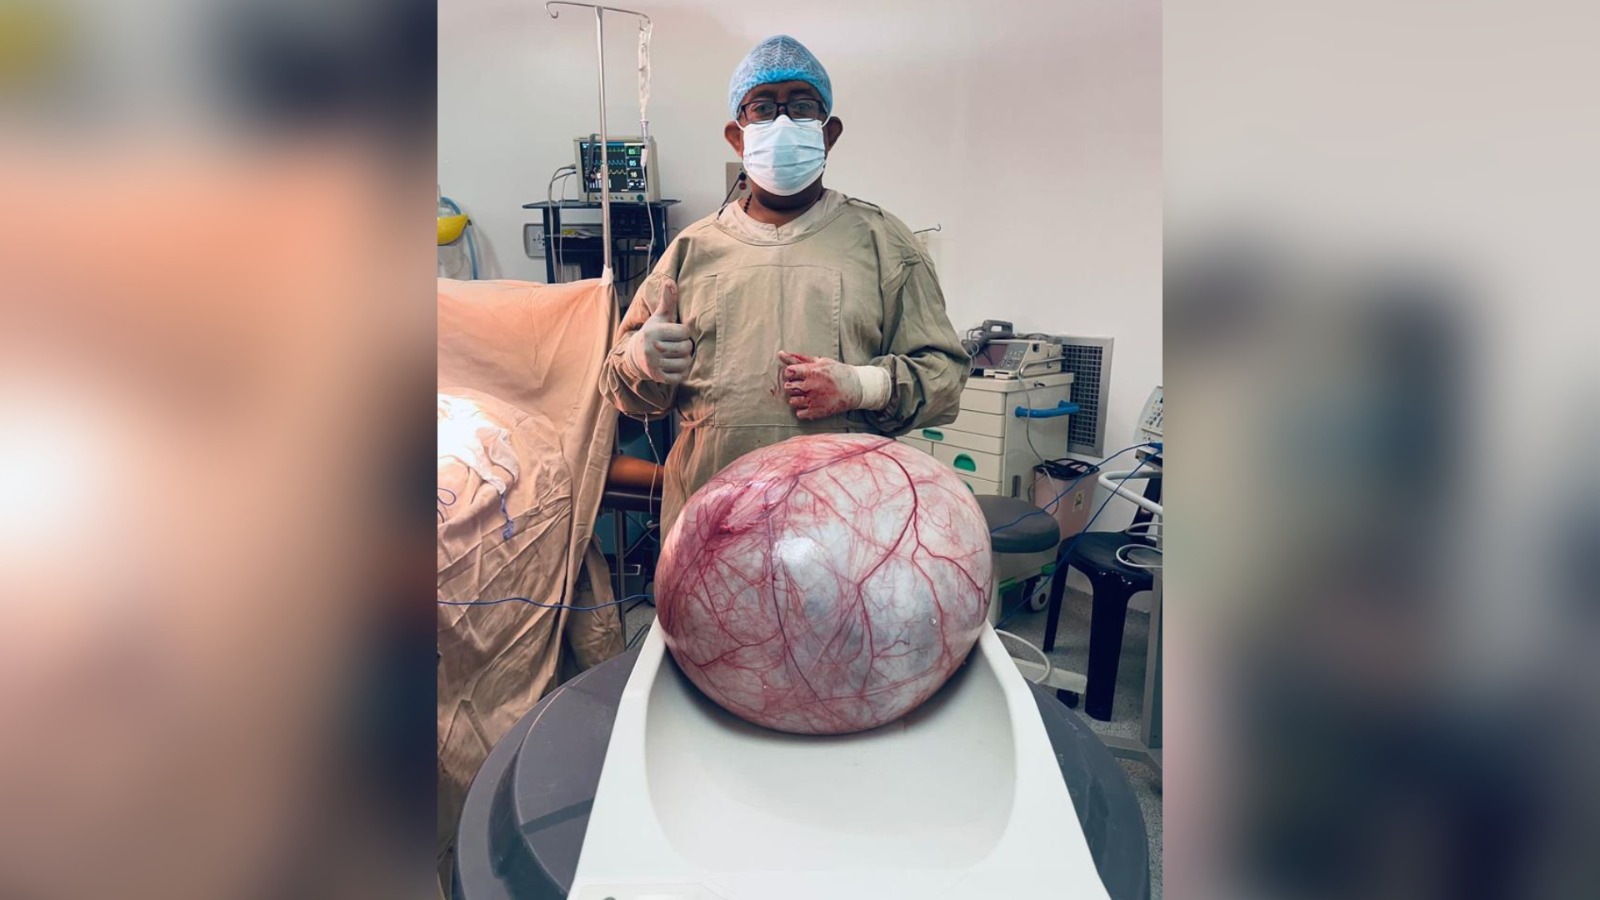 Impresionante, le extirpan tumor de 12 kilogramos a una mujer wayuu